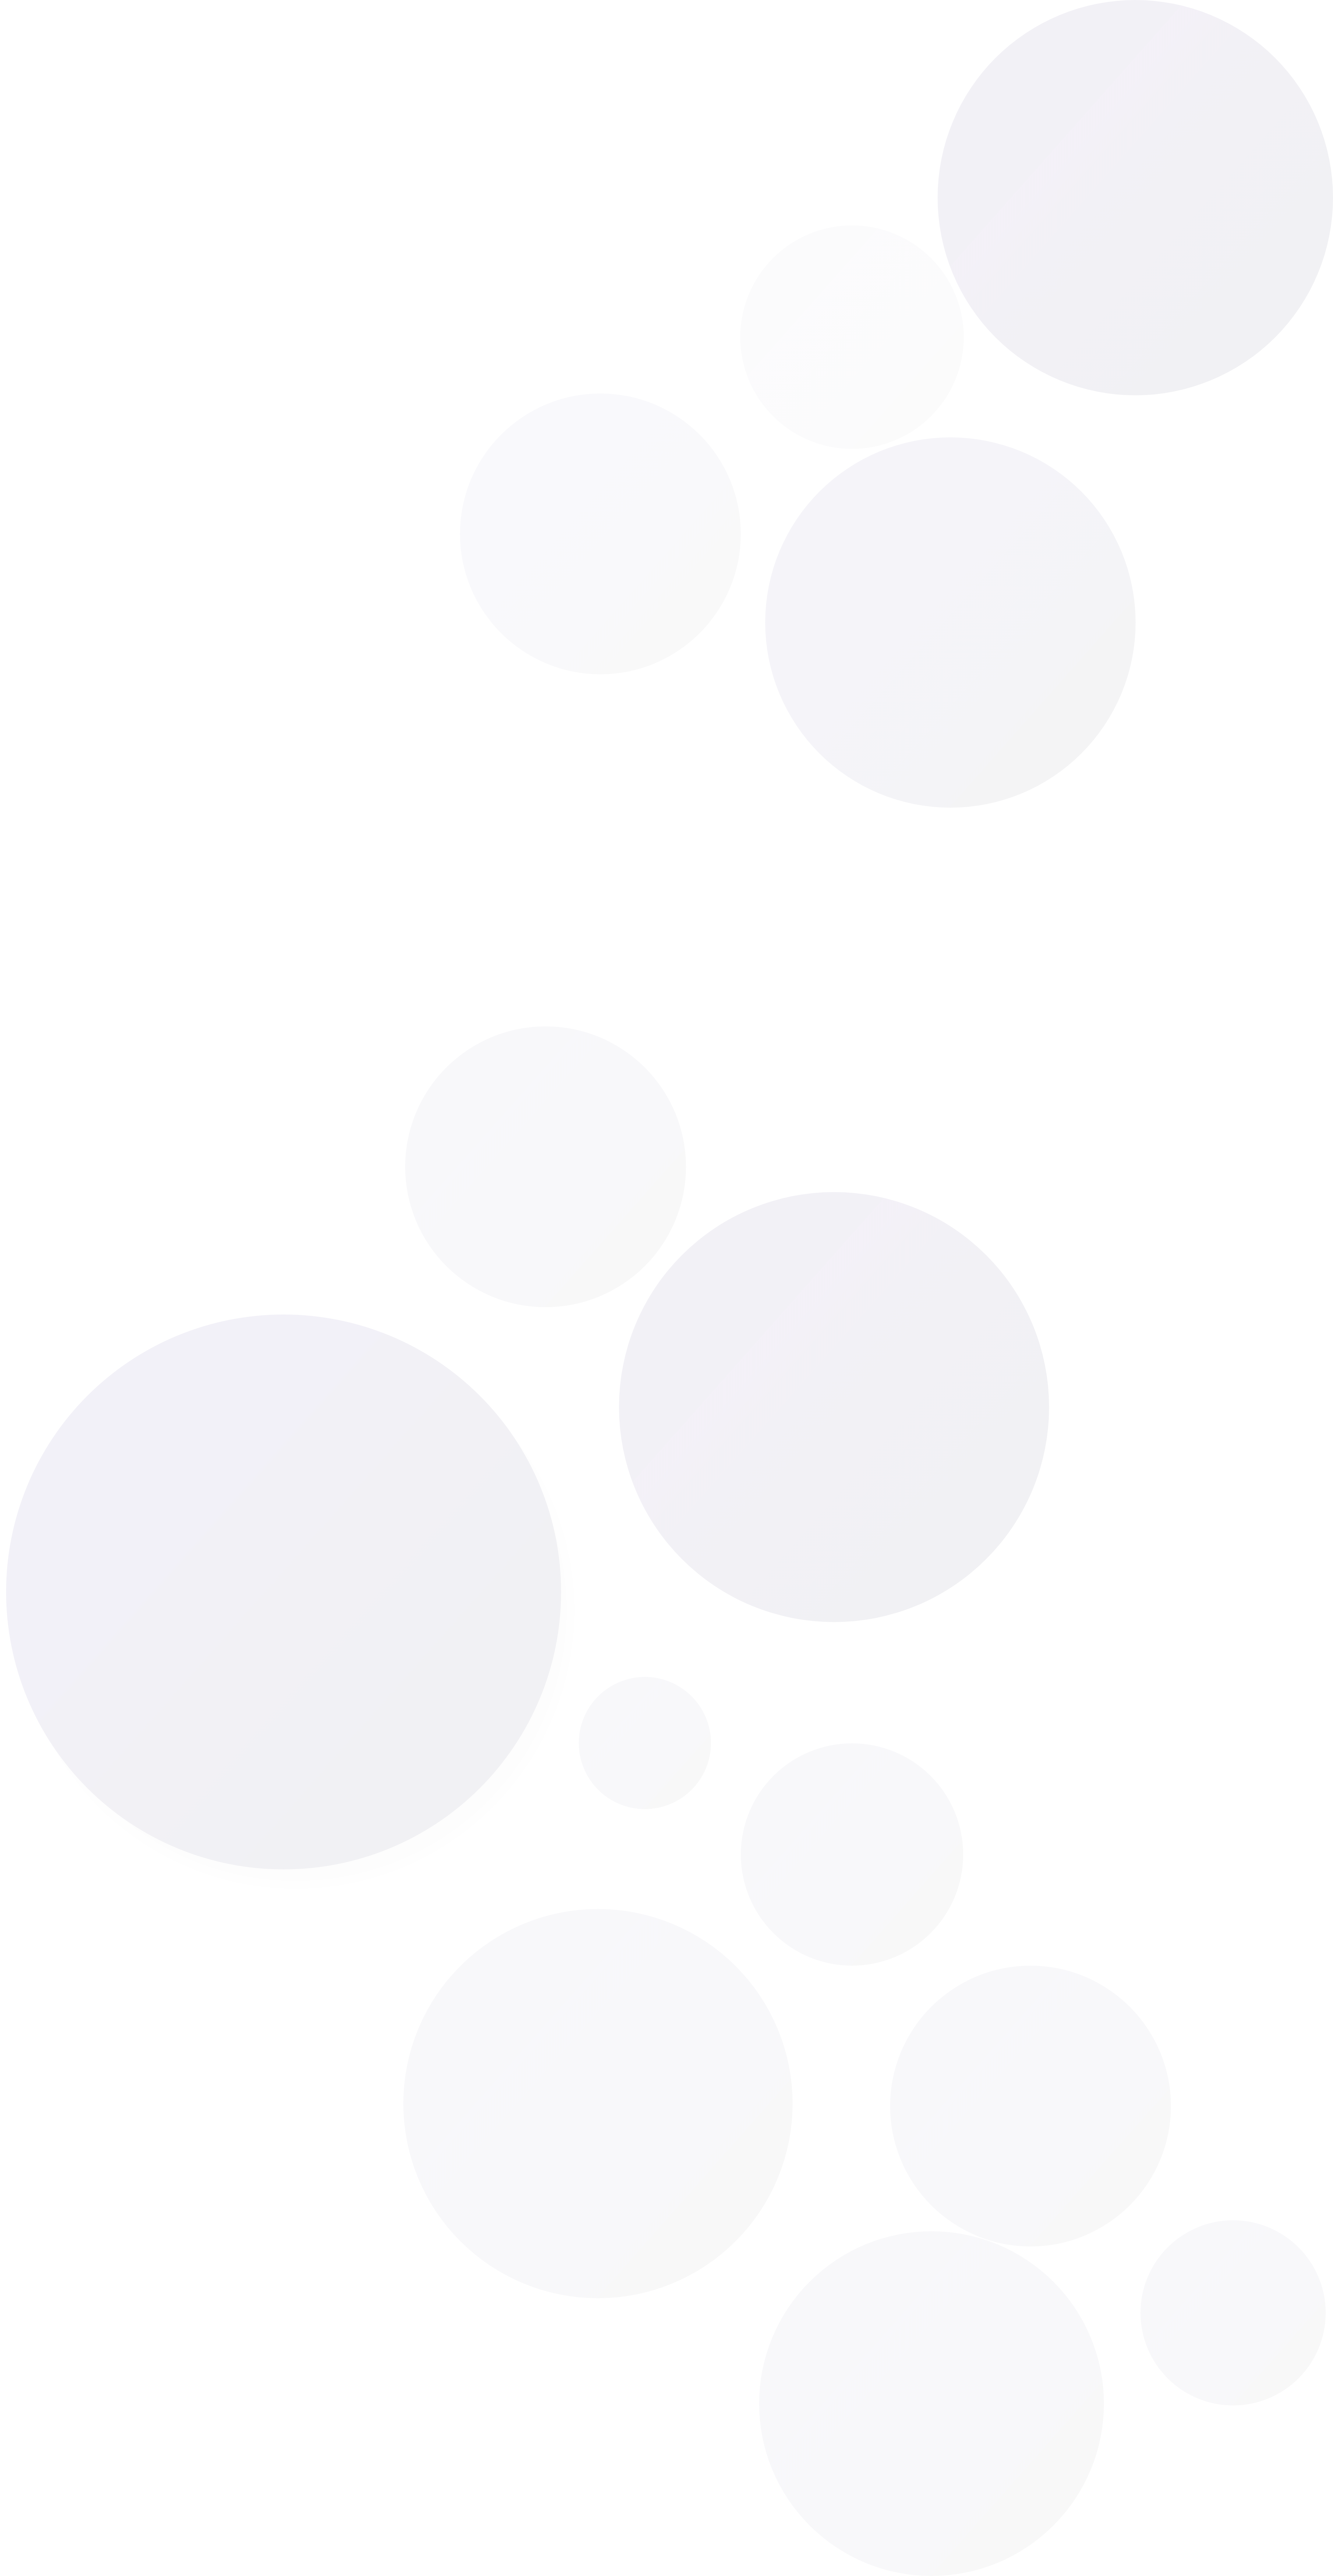 background image of floating balls